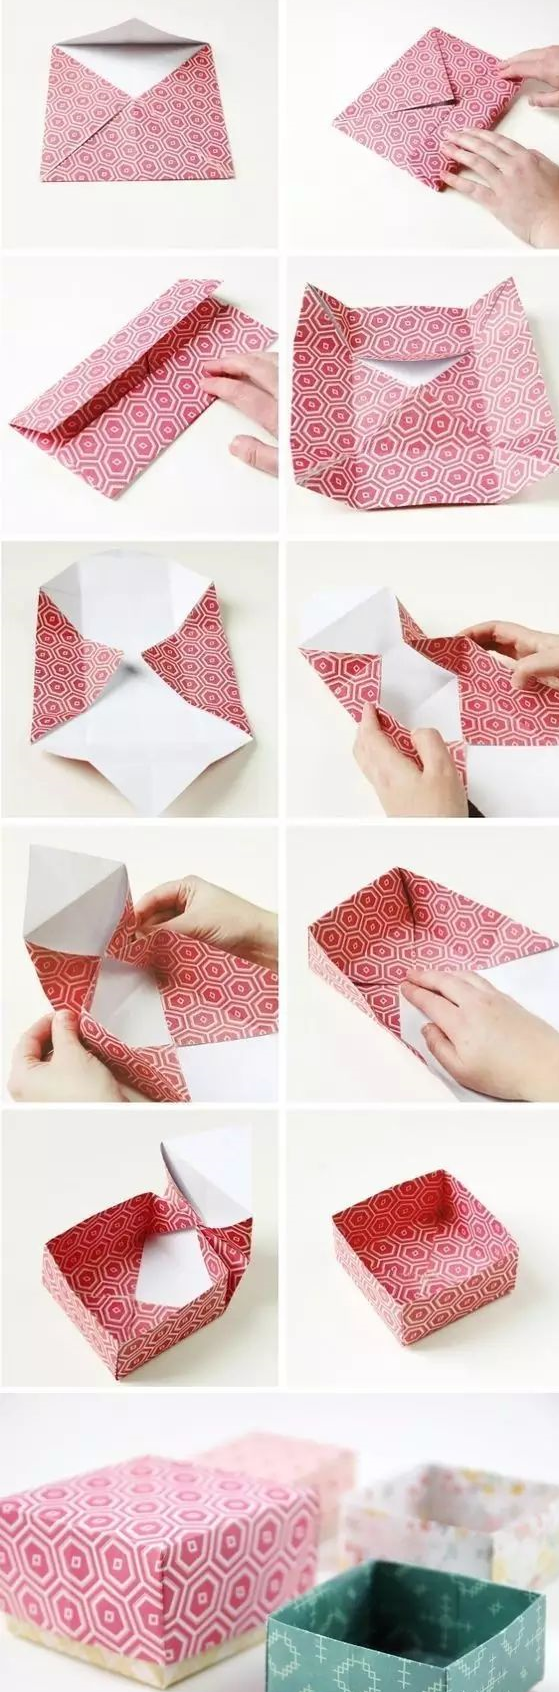 礼盒盖子折叠方法图片